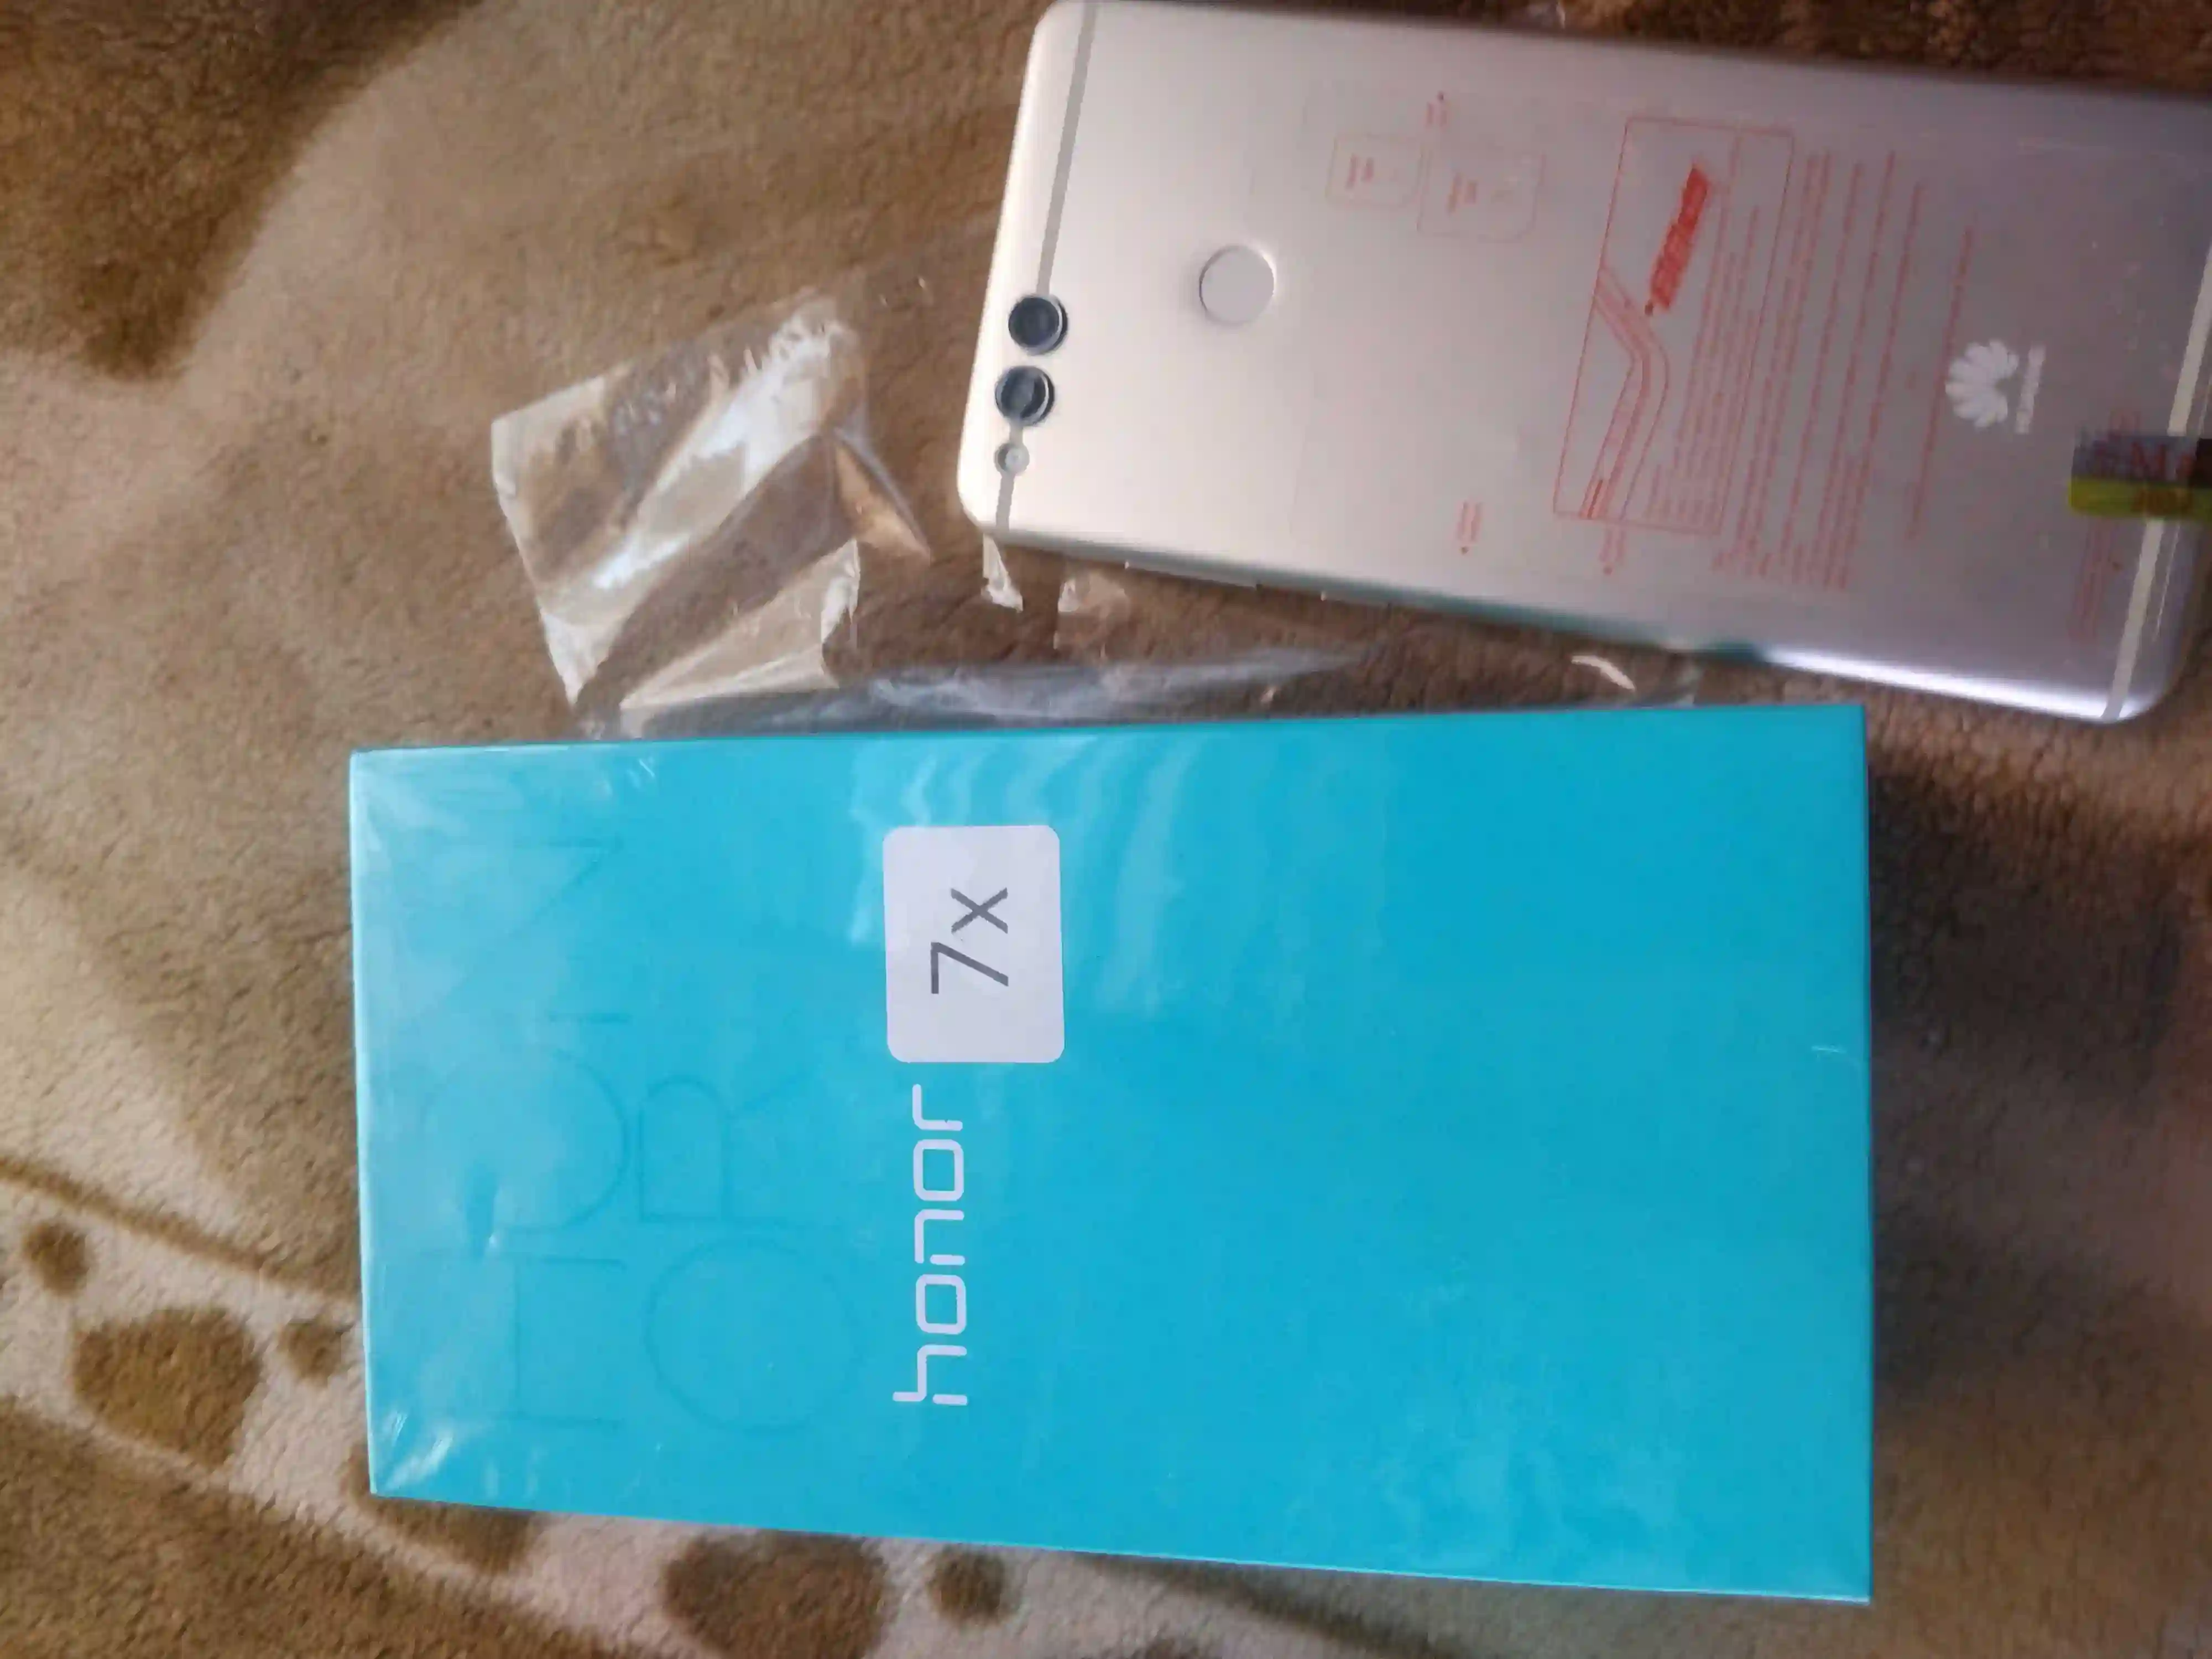 Huawei 7x, 128gb, Full Box & Accessories